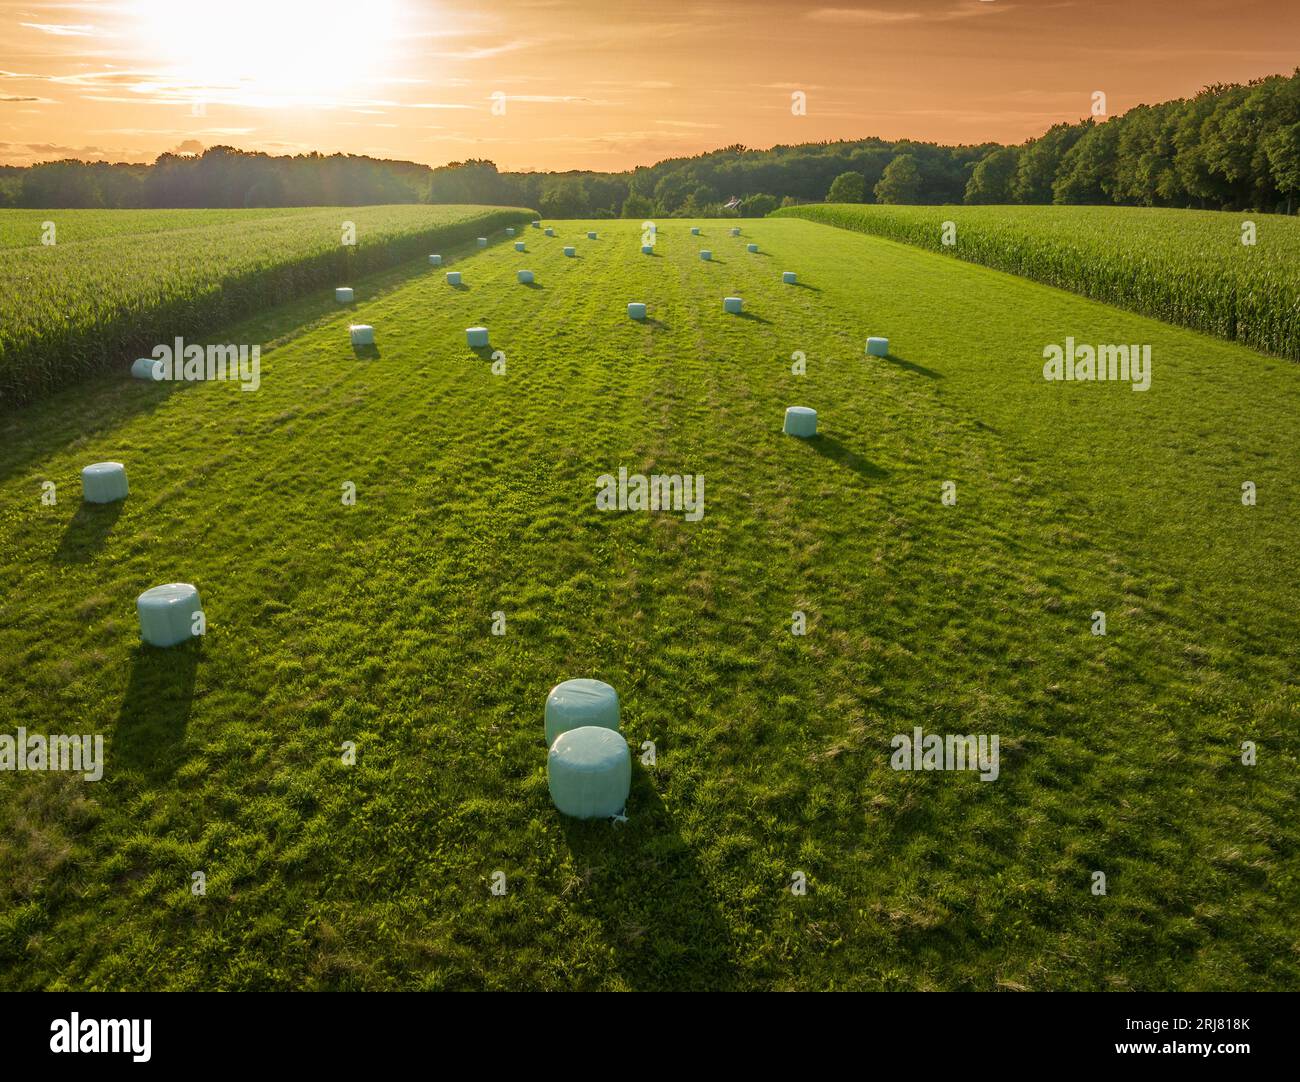 balles de foin enveloppées dans une prairie avec un beau coucher de soleil Banque D'Images